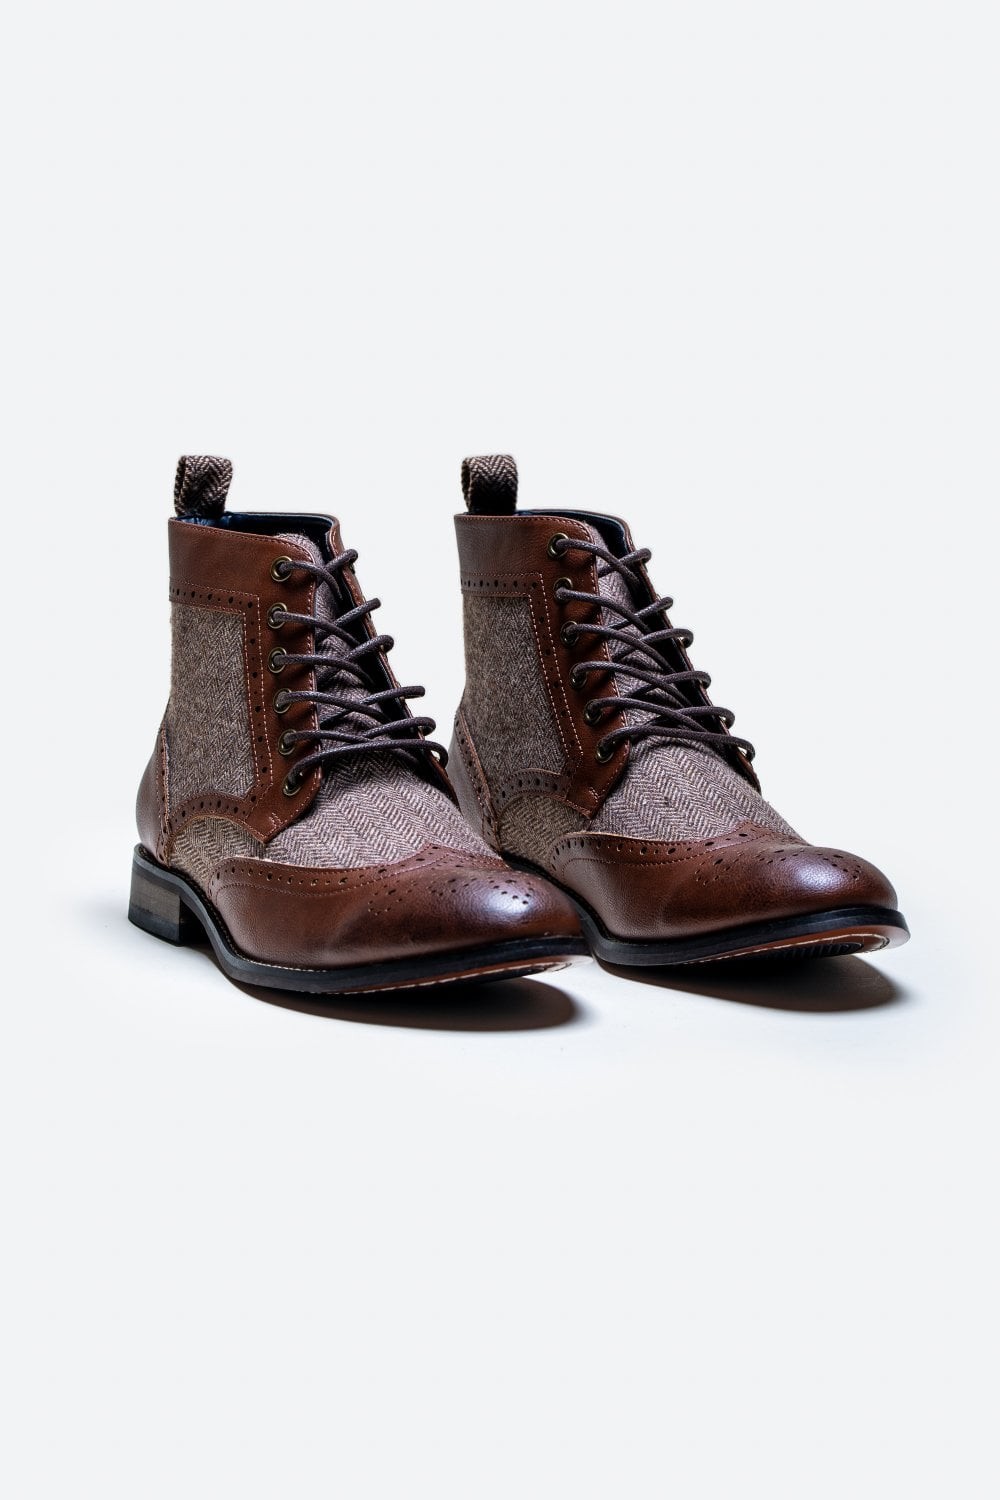 Men's Ankle Boots Lace Up Brogue Shoes - JONES - Brown